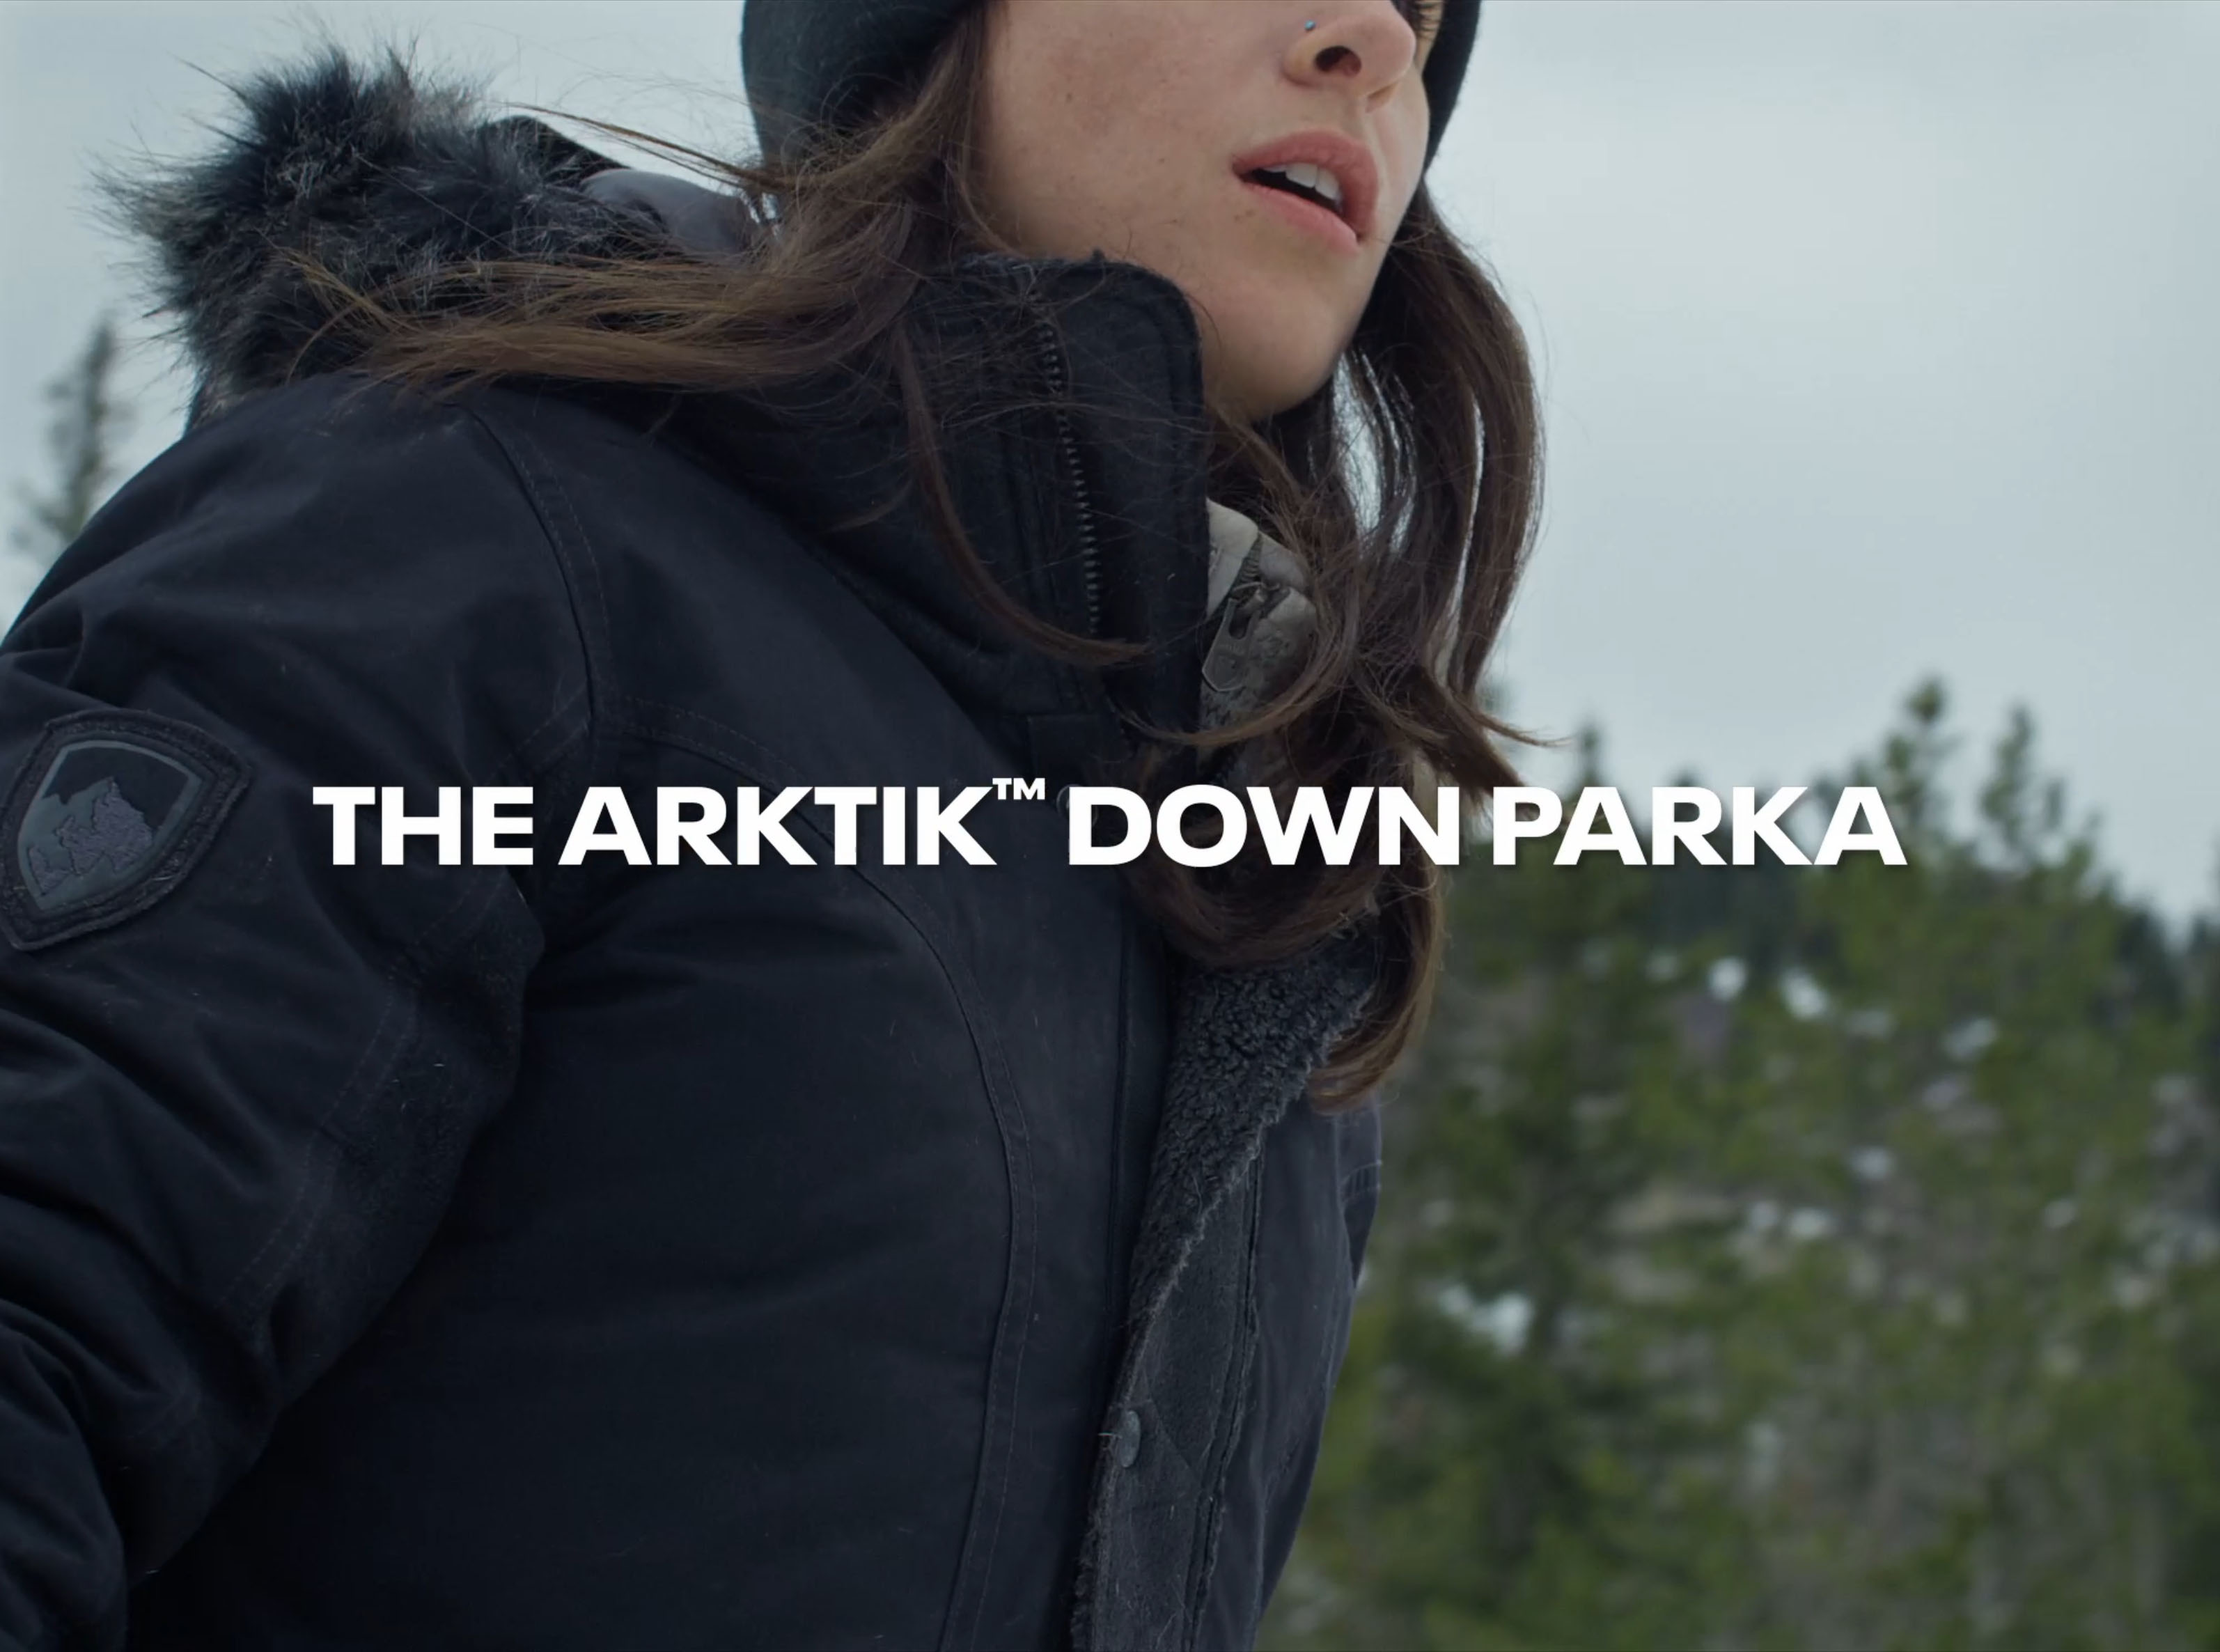 Arktik™ Down Parka in Women's Outerwear